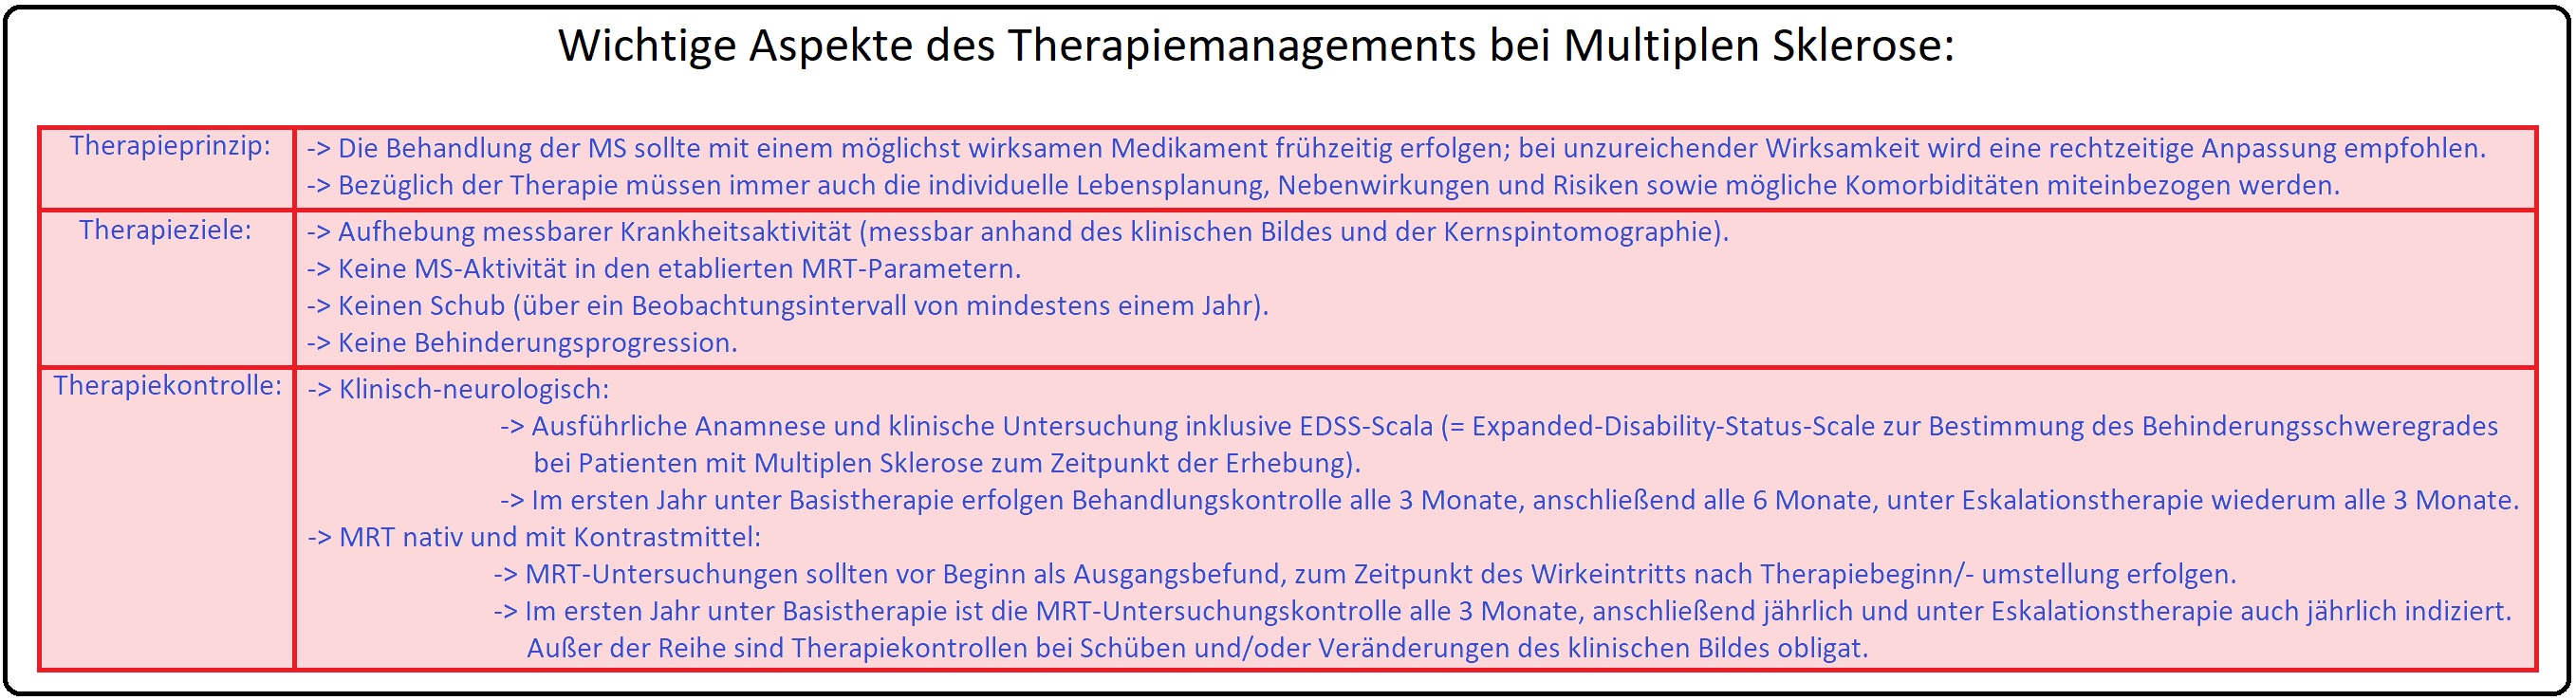 5 Wichtige Aspekte des Therapiemanagements bei Multiplen Sklerose